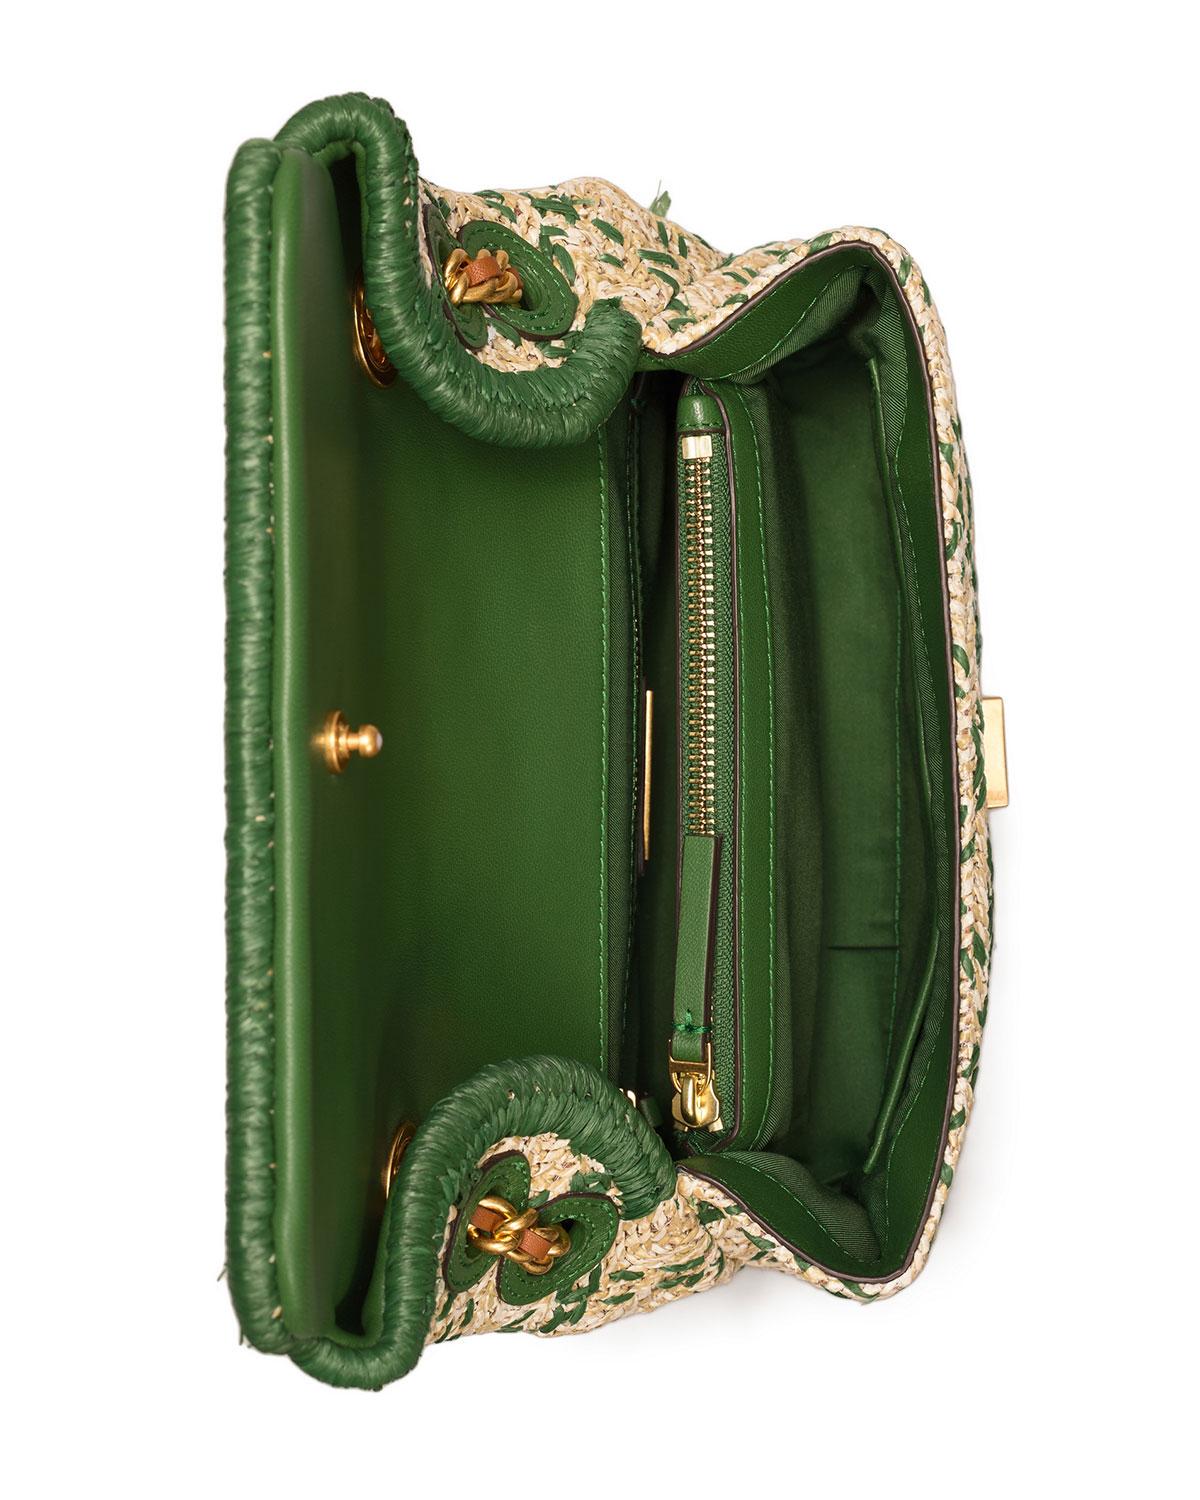 Tory Burch Fleming Soft Straw Small Convertible Shoulder Bag-  Natural/Arugula 64426-283 192485410396 - Handbags, Fleming - Jomashop